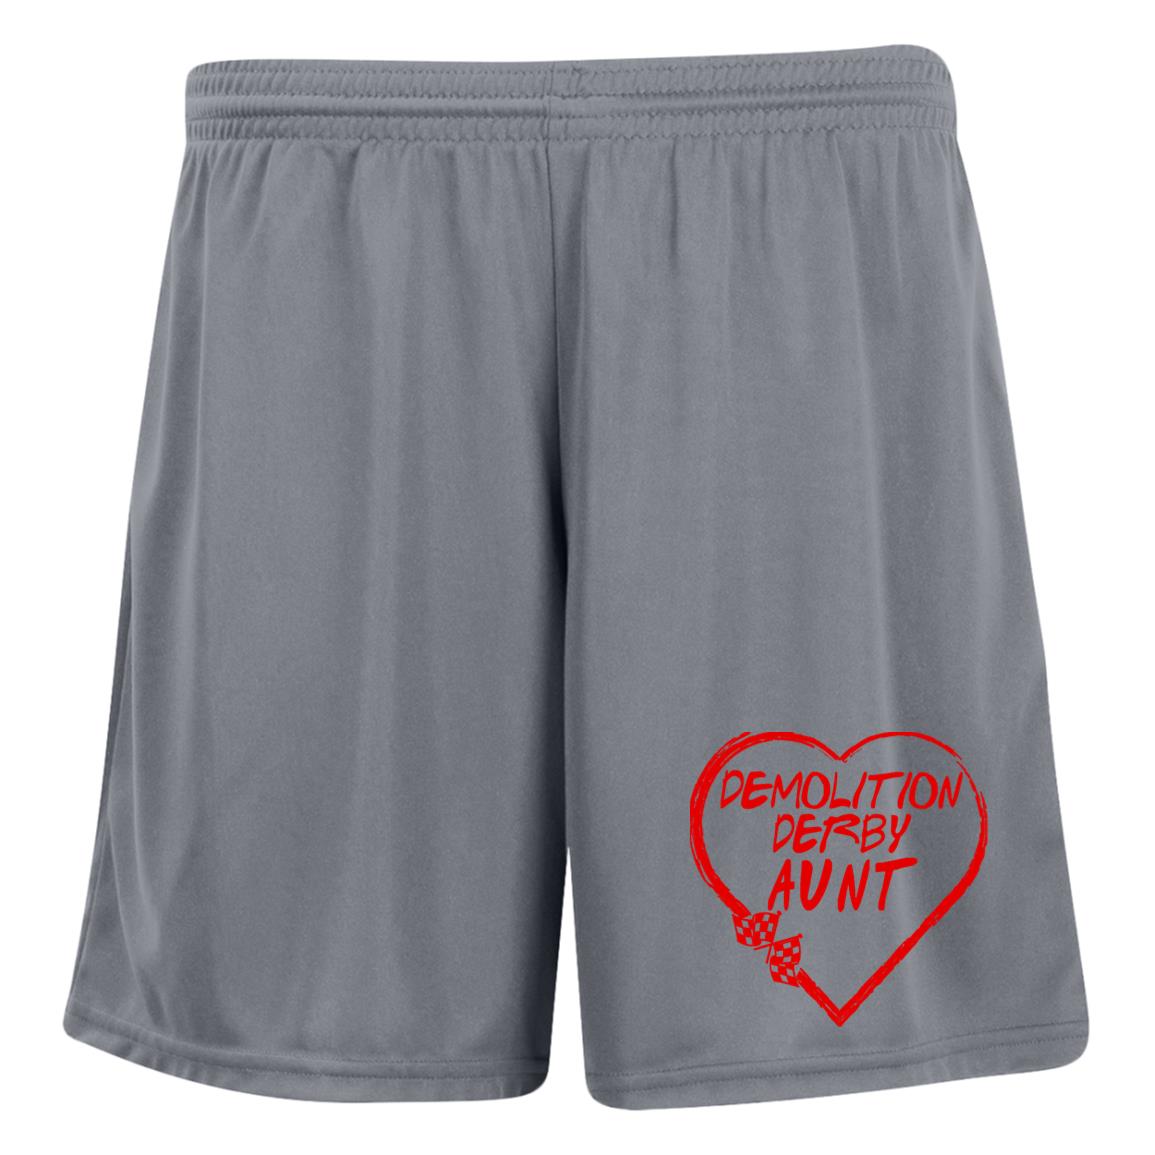 Demolition Derby Aunt Heart Ladies' Moisture-Wicking 7 inch Inseam Training Shorts